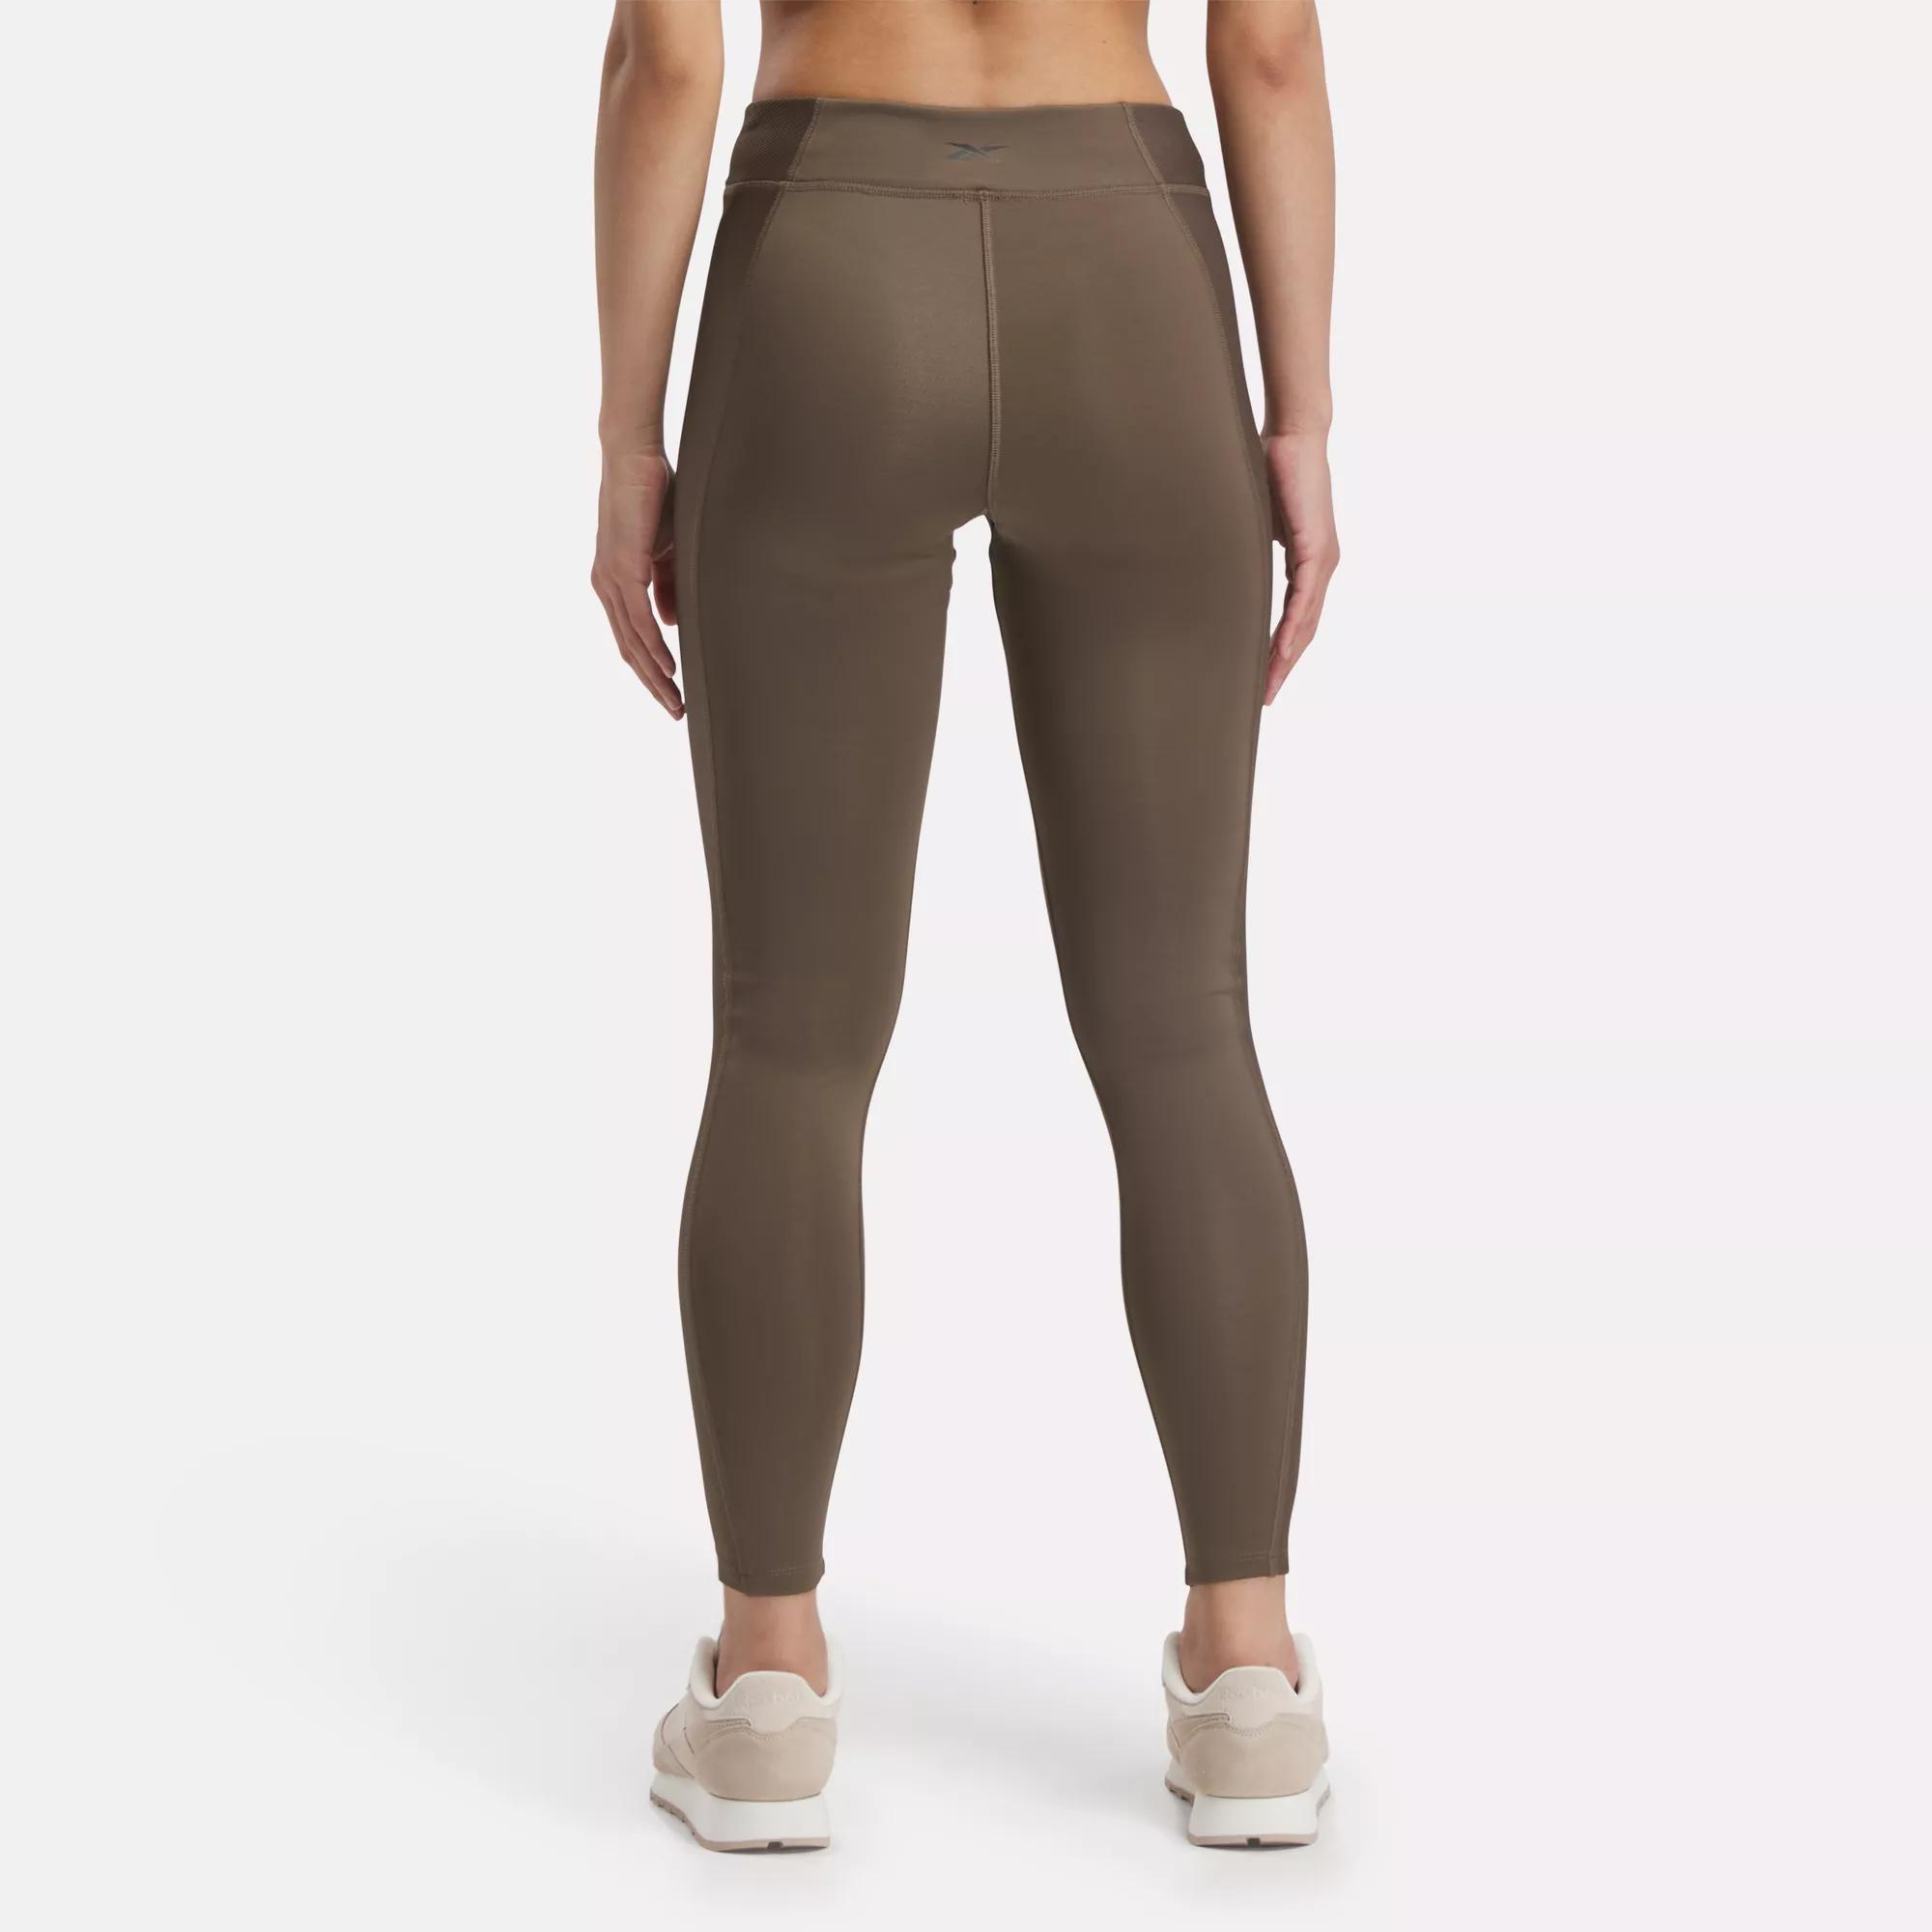 Buy Reebok Womens Yoga Rib Track Pants online